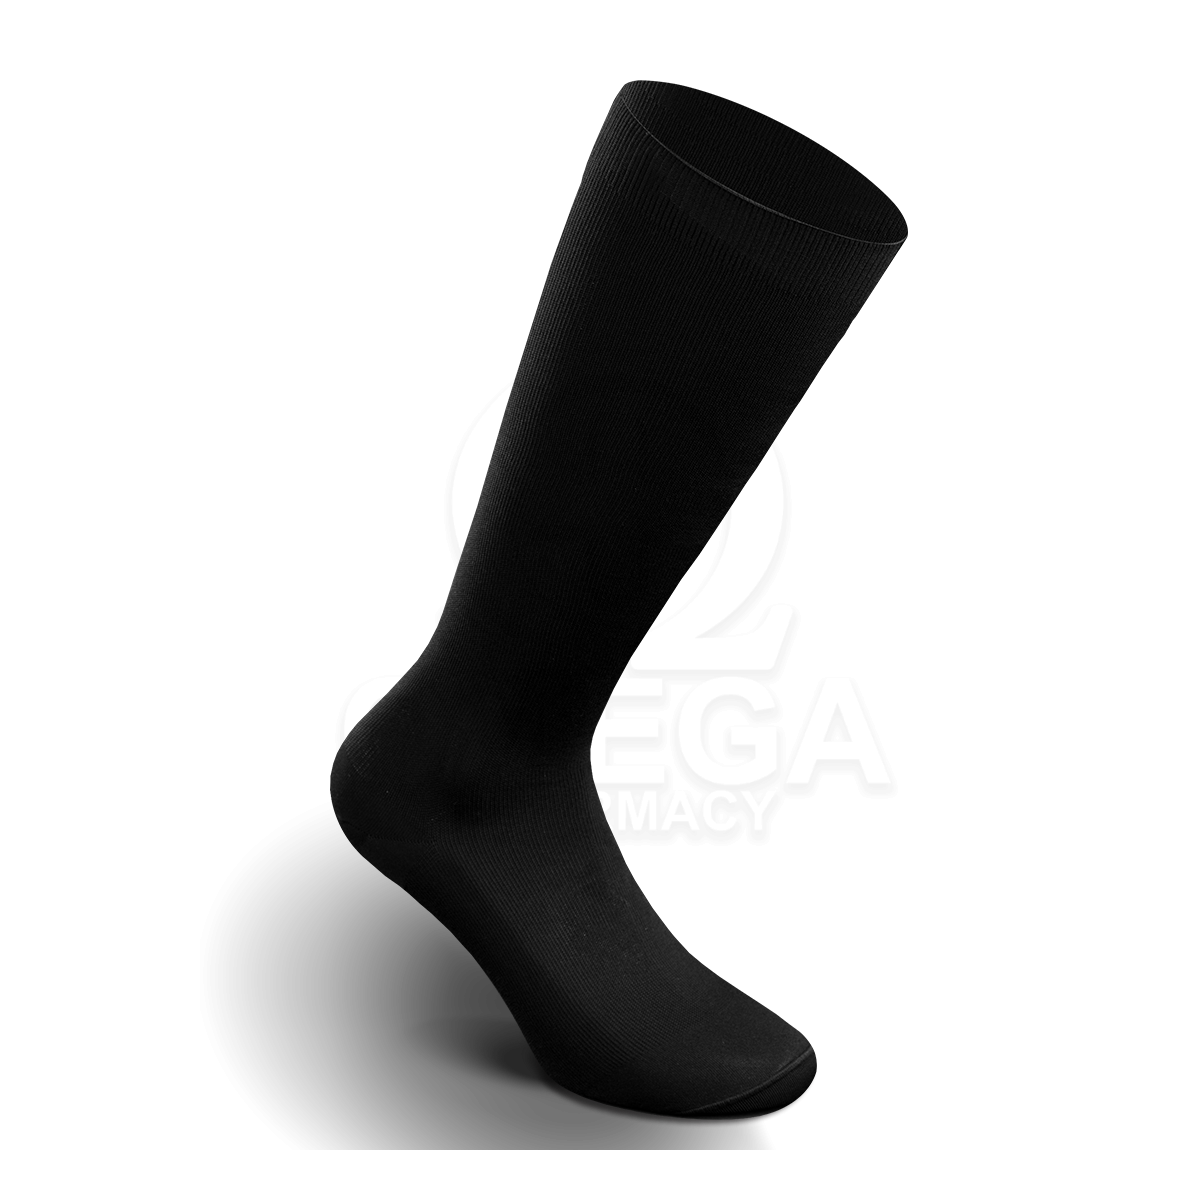 VARISAN Lui Ανδρικές Κάλτσες Διαβαθμισμένης Συμπίεσης 18mmHg Nero (Μαύρο)  Κάτω Γόνατος No 1 38-40 1 Ζευγάρι